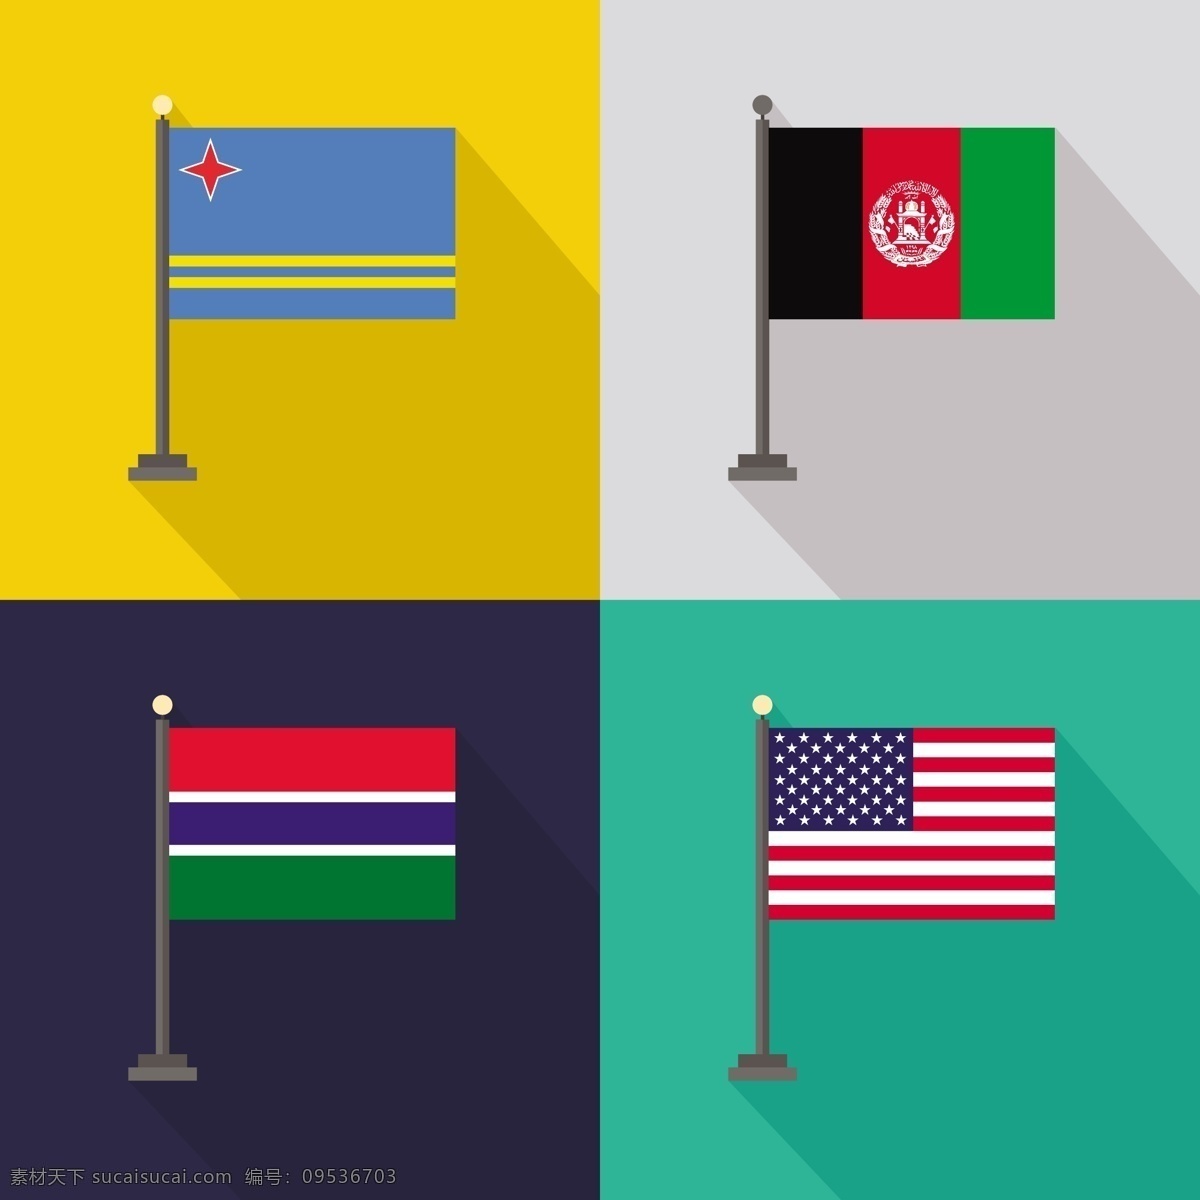 阿鲁巴 阿富汗 冈比亚 美国 国旗 世界国旗 国家 国际 爱国 团结 民族 美国美国 爱国主义 黄色